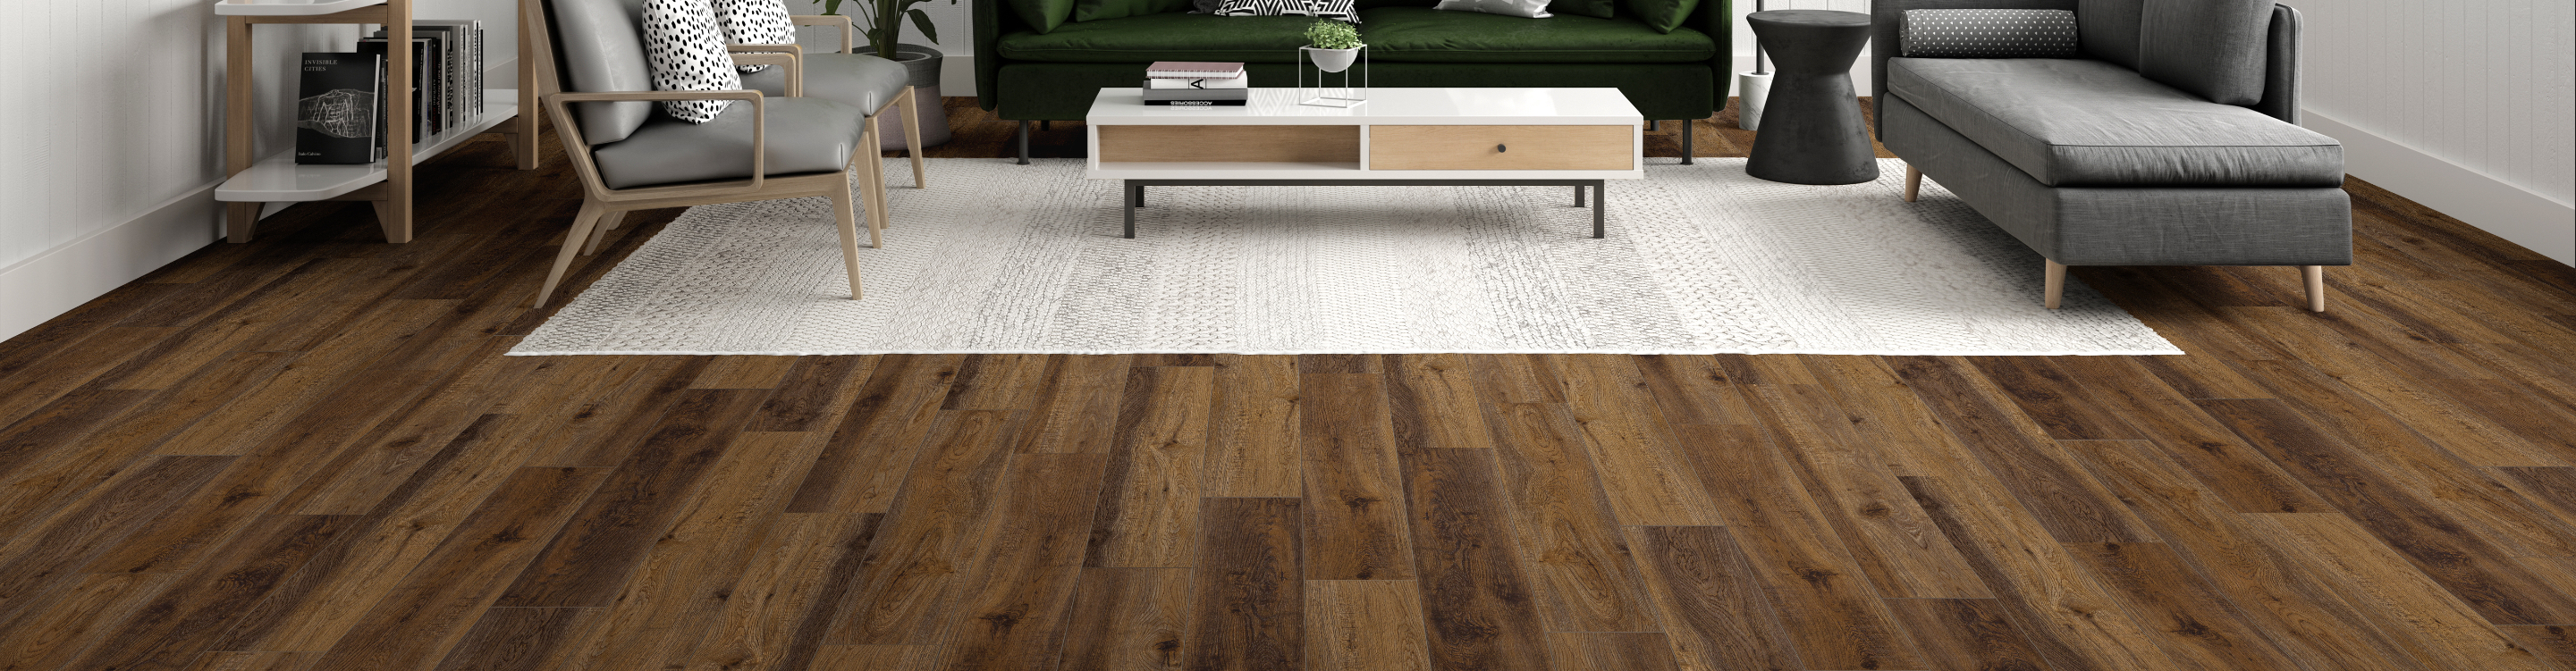 Textured Hardwood Floor in Living Room